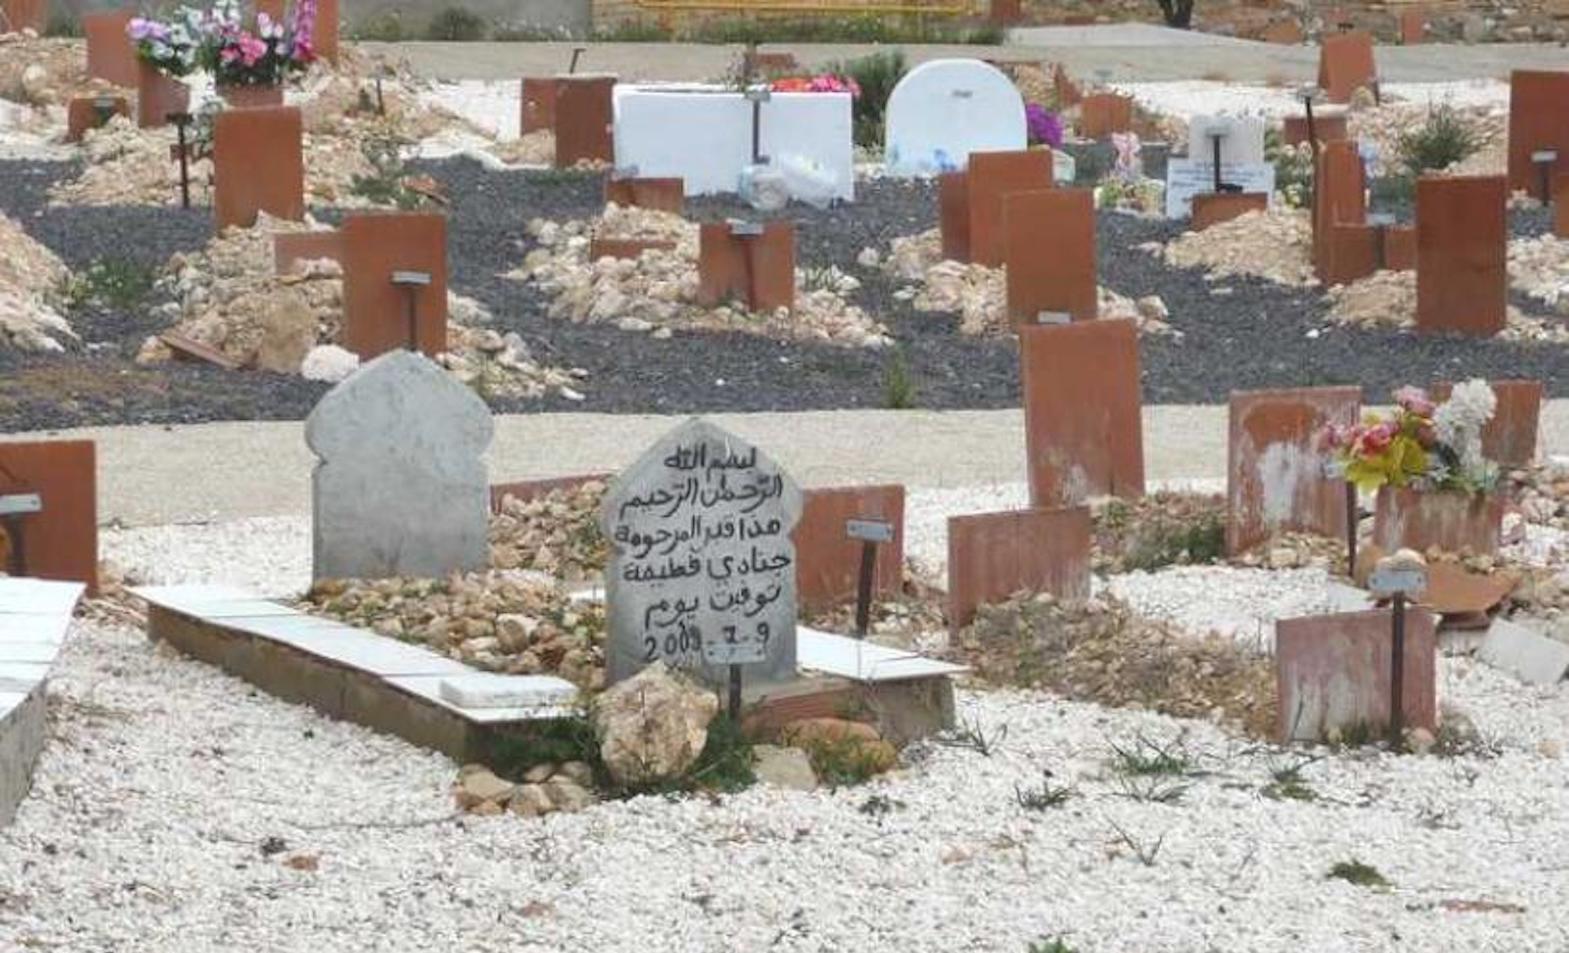 Varios ayuntamientos de Guipúzcoa dispondrán de una zona habilitada para enterramientos bajo el rito islámico